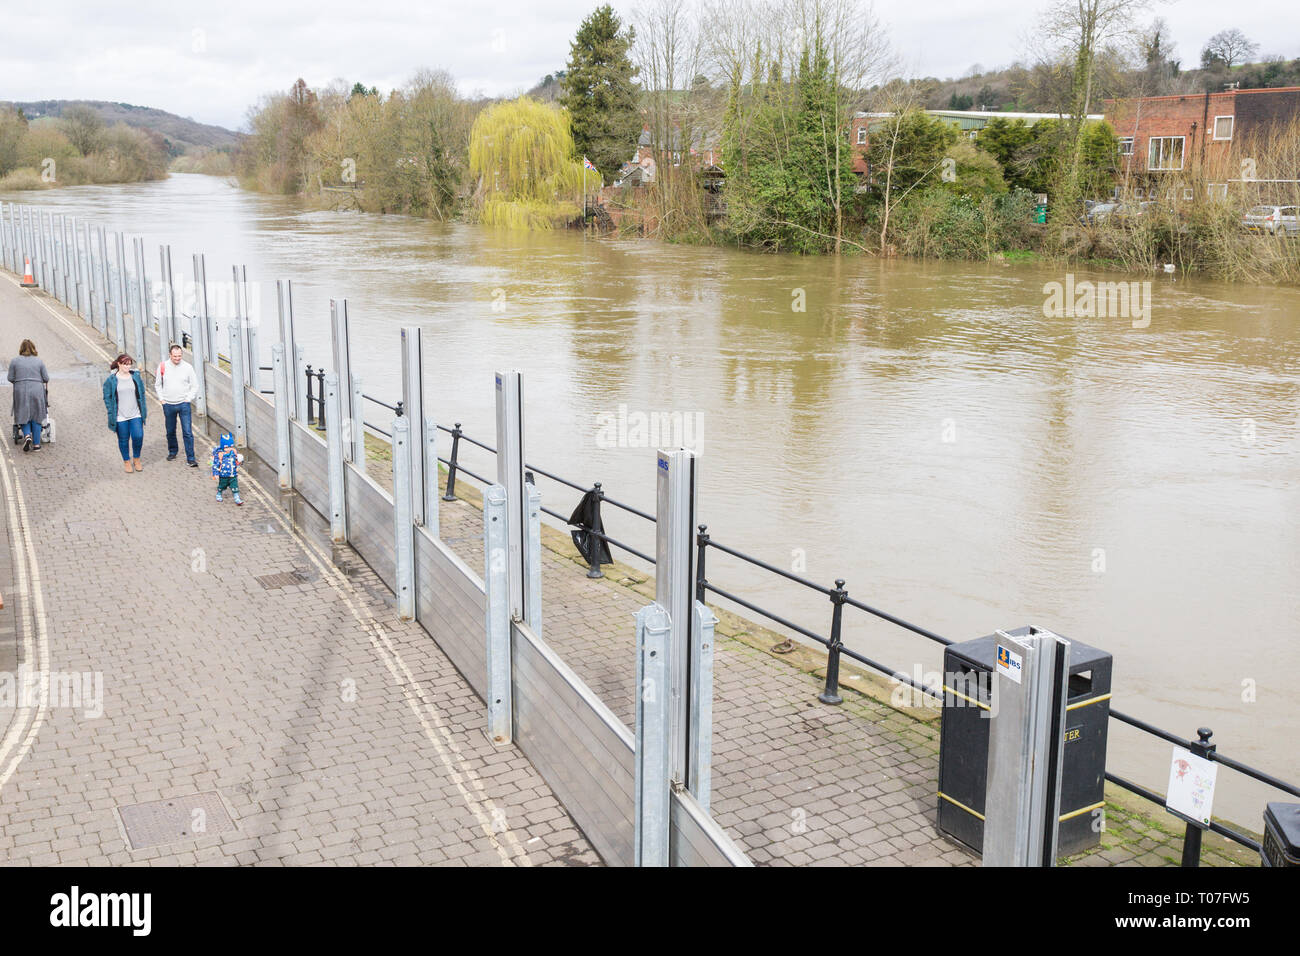 Bewdley, Shropshire, Reino Unido. 18 Mar, 2019. Barreras contra inundaciones en Bewdley, Shropshire. El río Severn aquí está aumentando debido a las recientes lluvias en el País de Gales. Crédito: Peter Lopeman/Alamy Live News Foto de stock